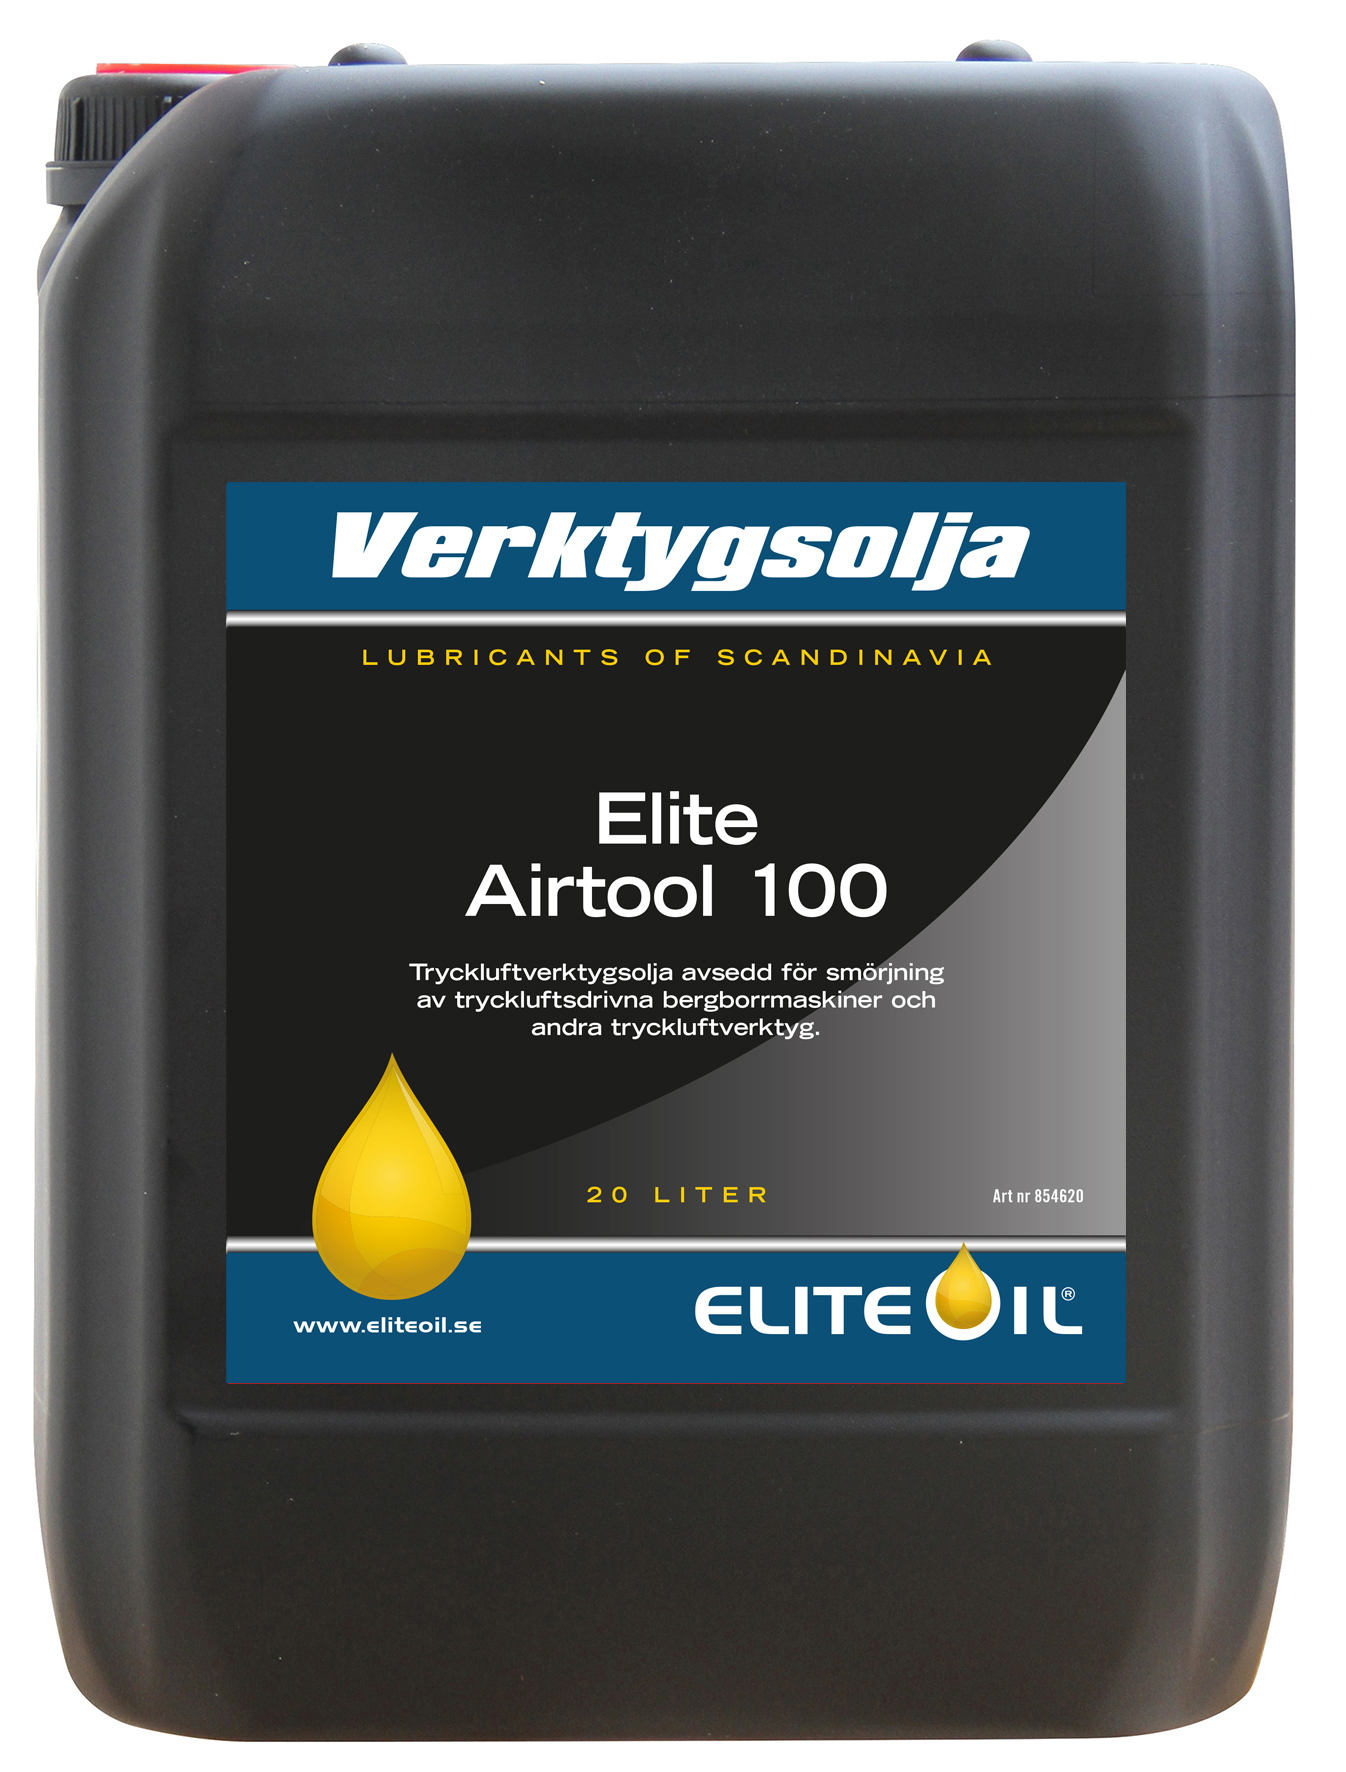 Elite Air Tool 100, 20 liter dunk-image